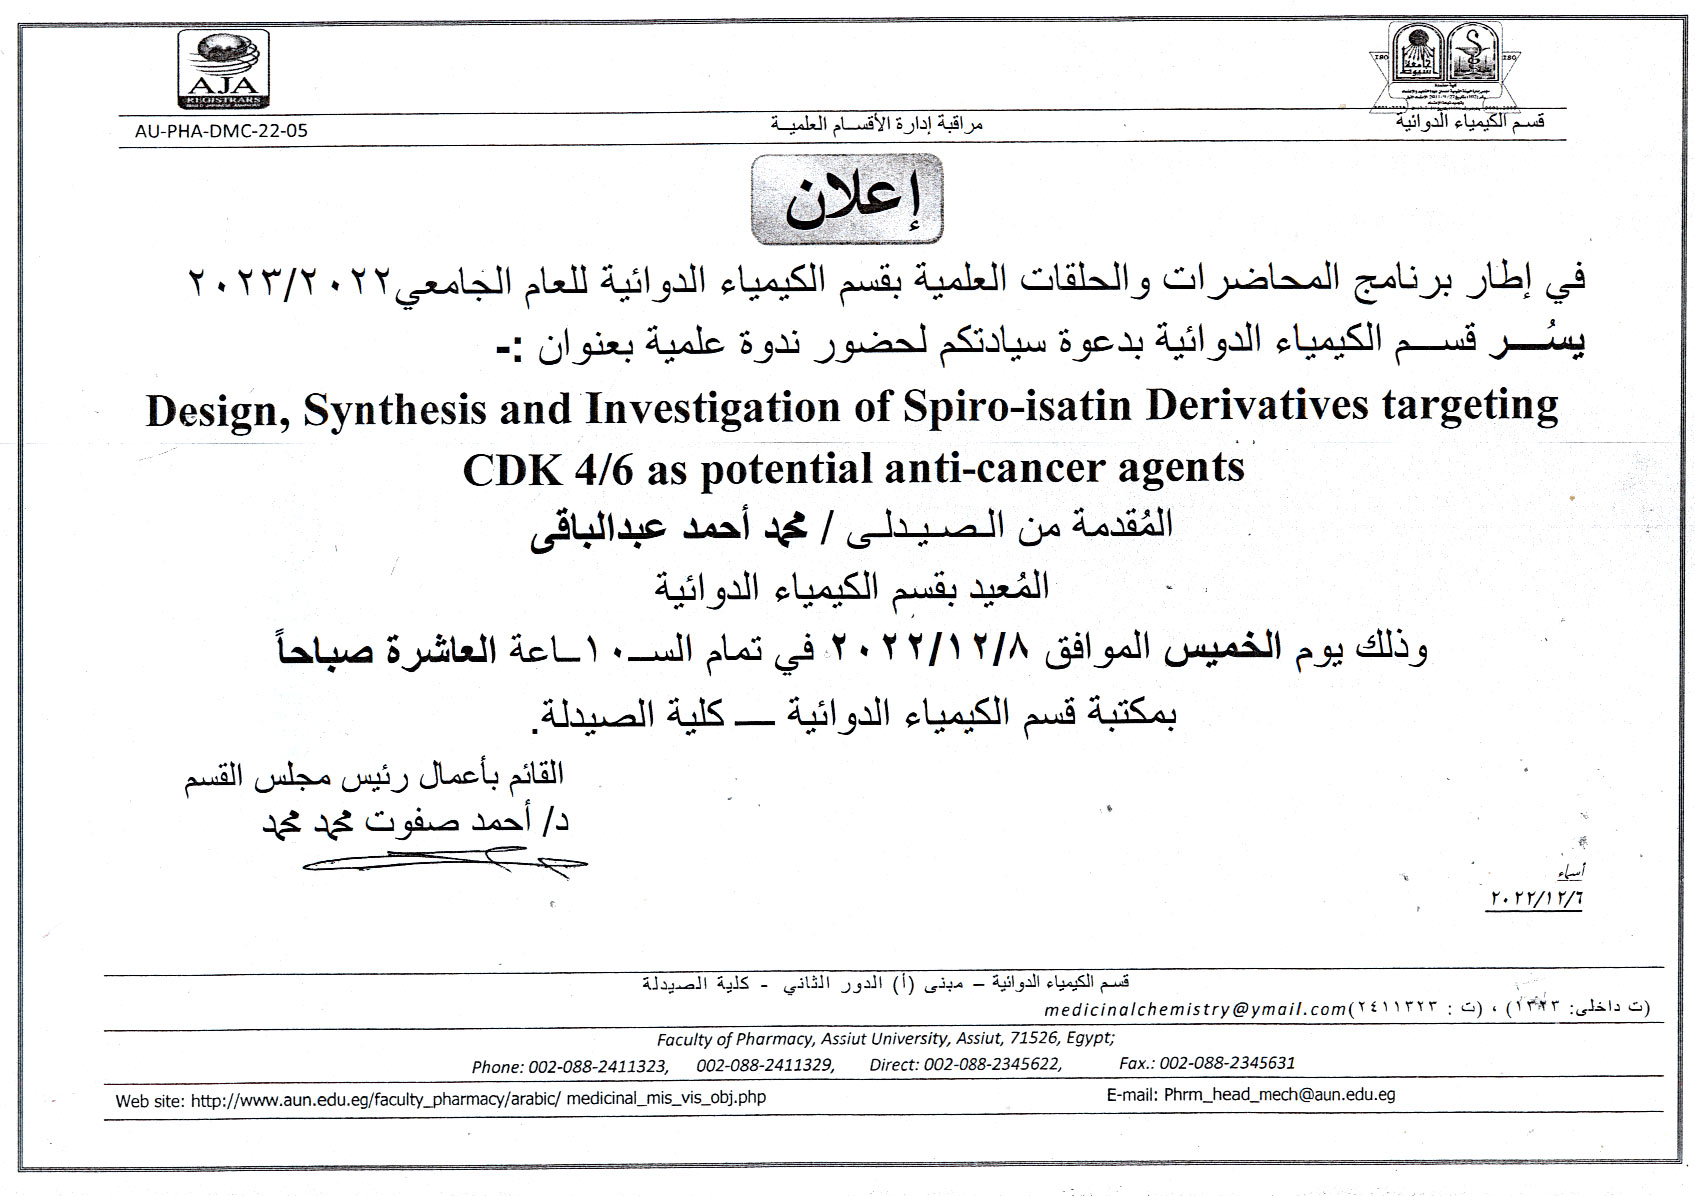 عقد ندوة علمية للصيدلي/ محمد أحمد عبدالباقي -  المعيد بقسم الكيمياء الدوائية  